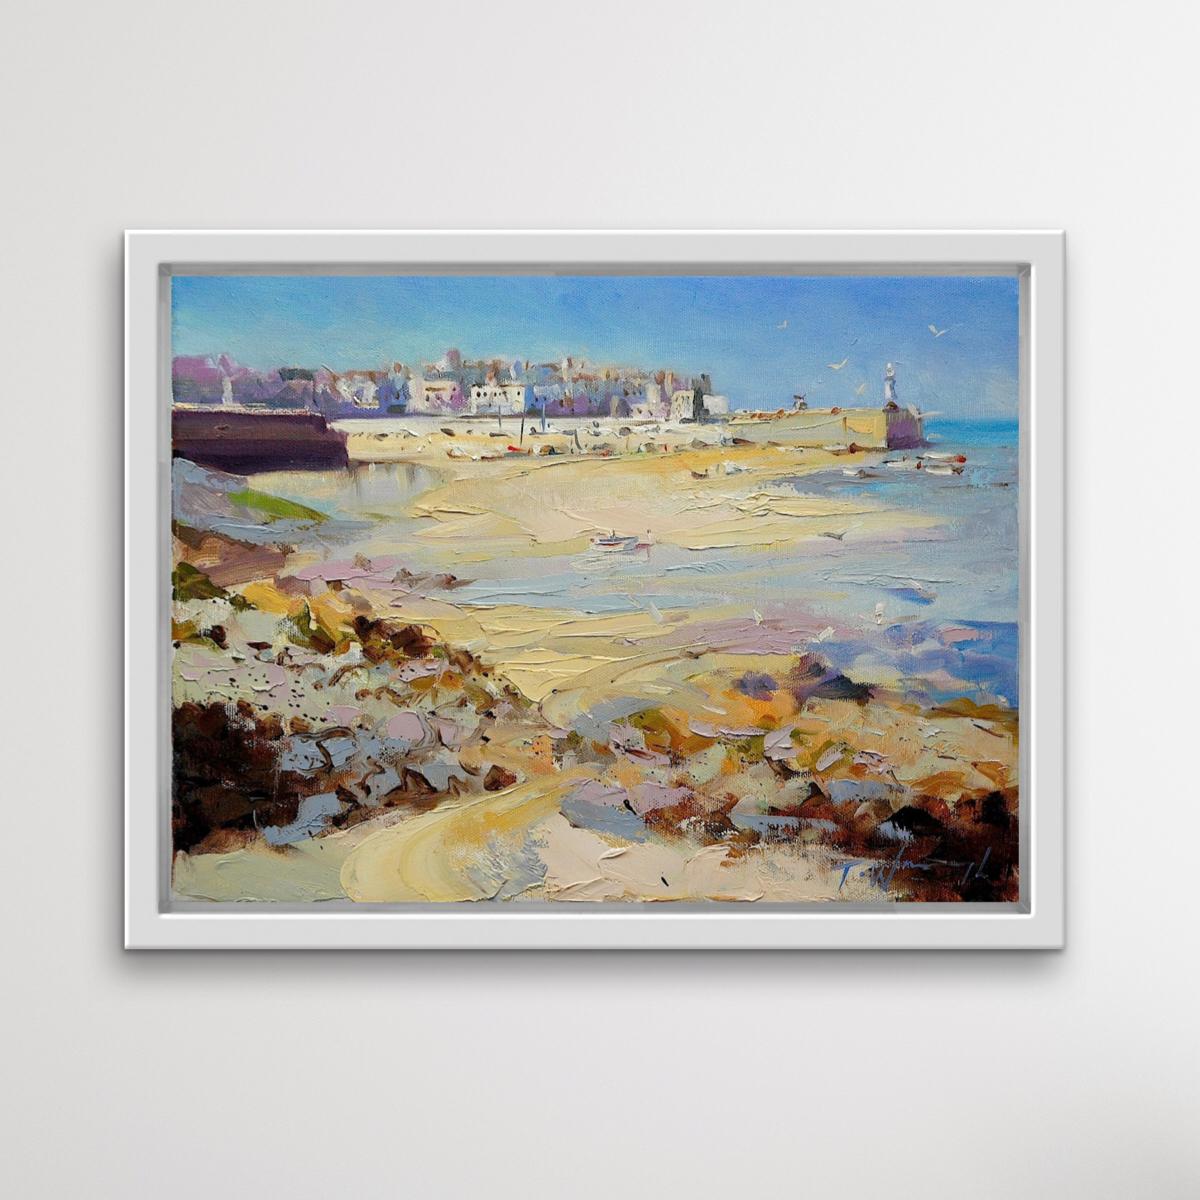 St Ives, Cornwall ist ein Original-Landschaftsgemälde von Trevor Waugh, das mit Öl, Pinsel und Spachtel auf Leinwand gemalt wurde.

Trevor Waugh wurde 1952 geboren und wuchs in London auf, wo er bei Wychwood Art arbeitete. Trevor studierte von 1970